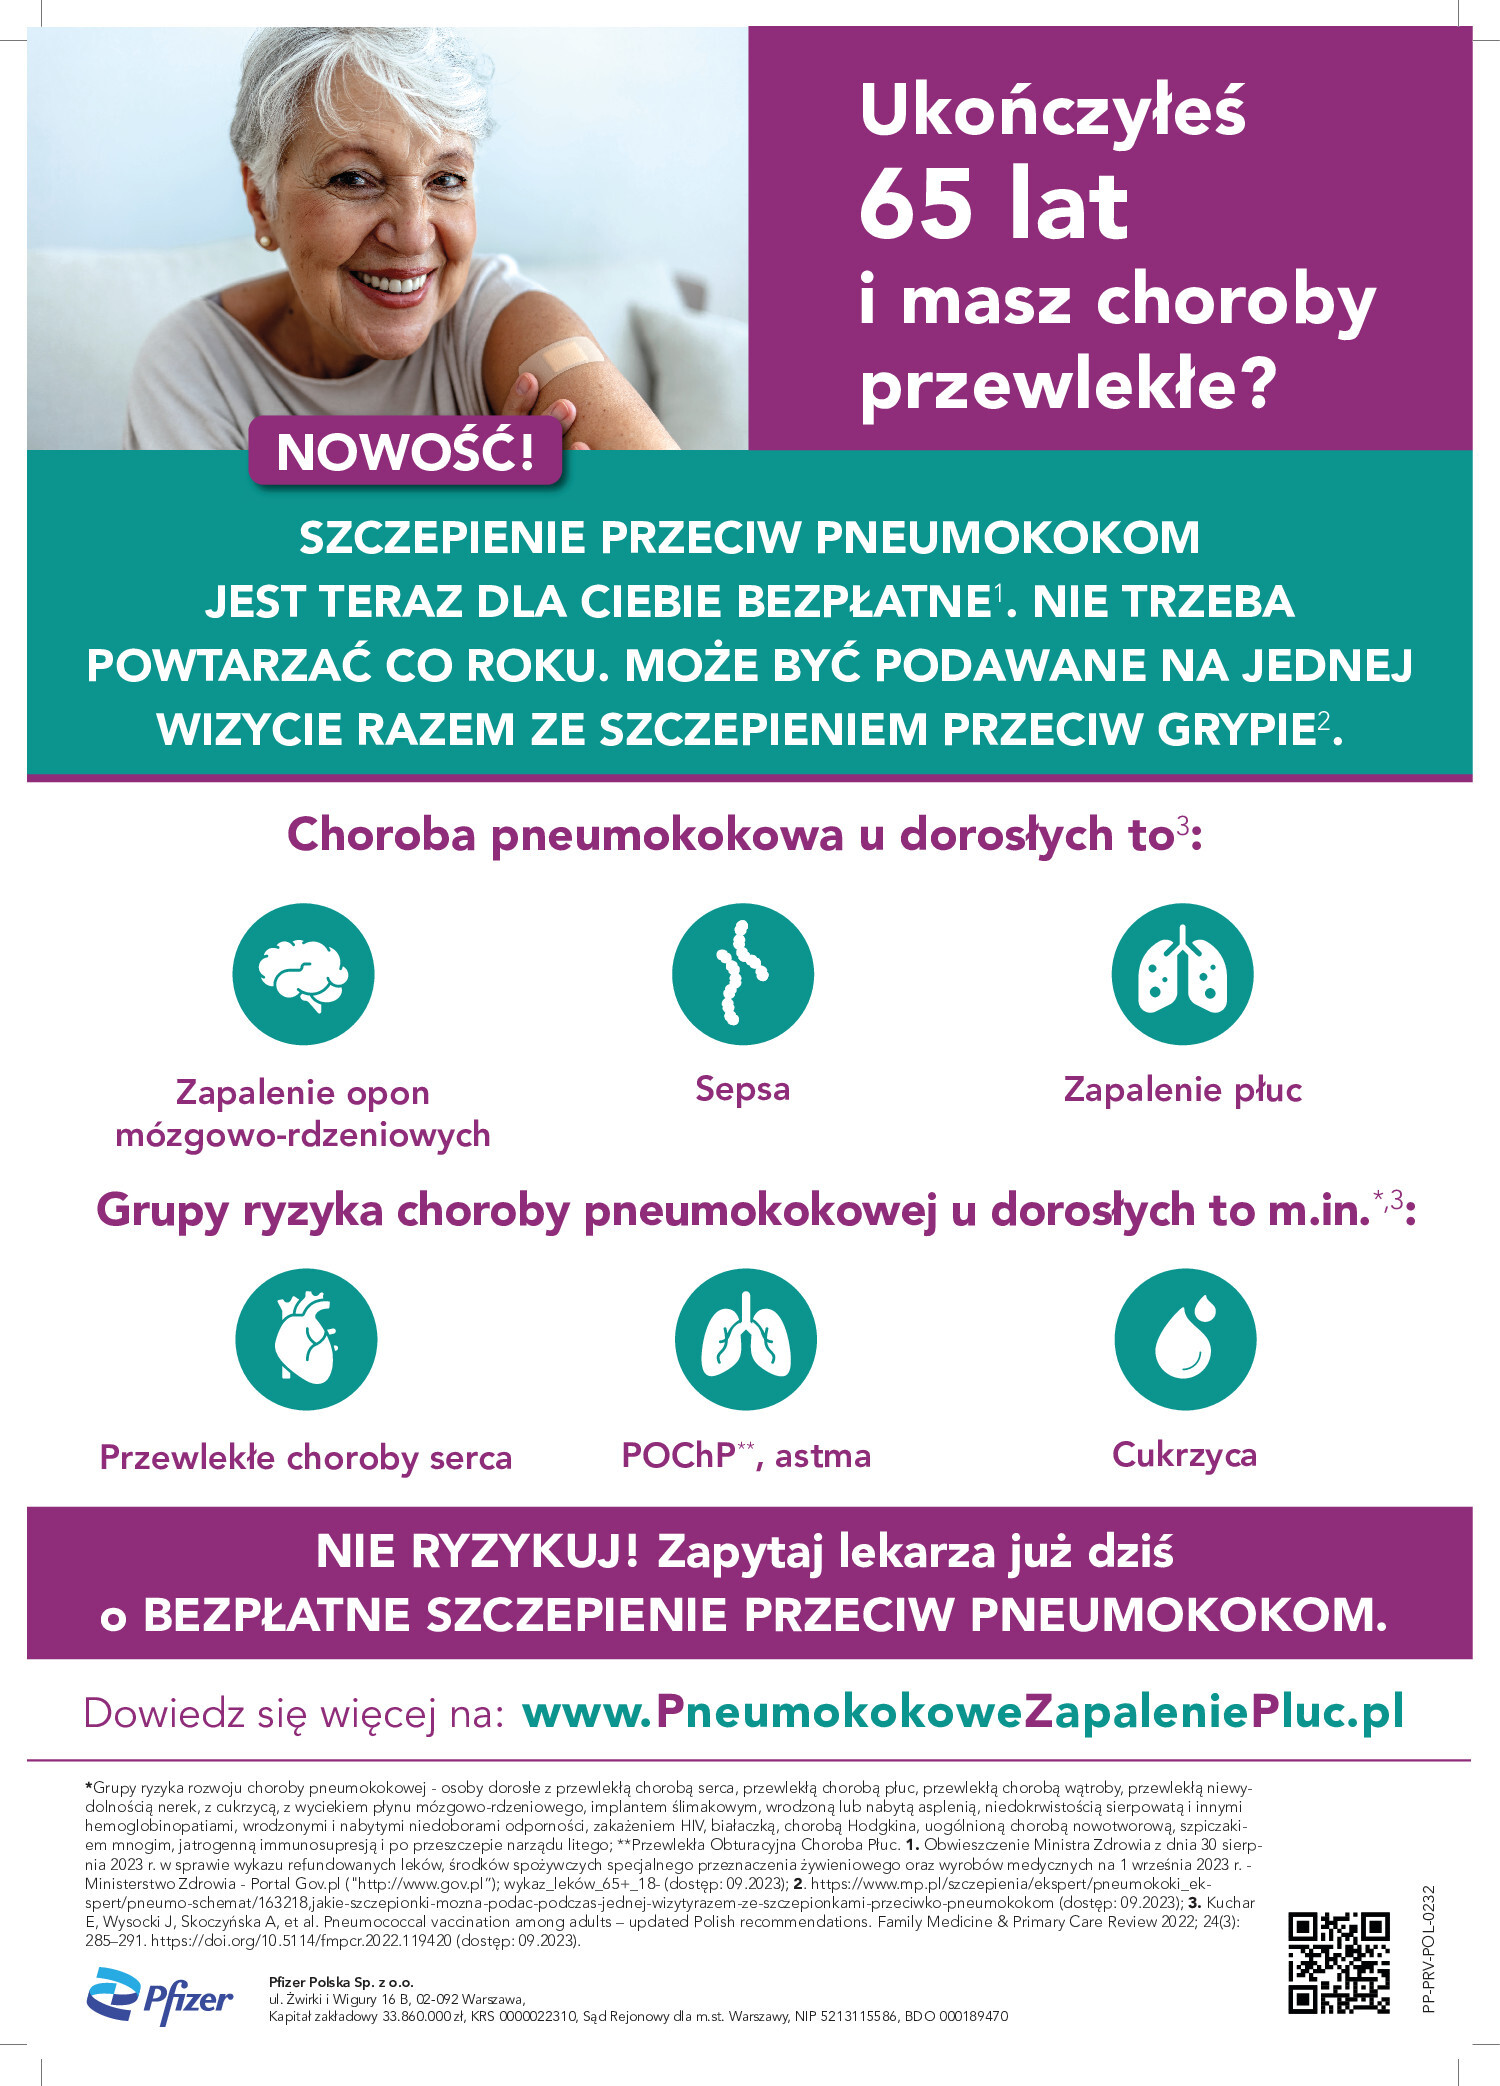 Plakat przedstawiający podstawowe informacje dotyczące szczepienia